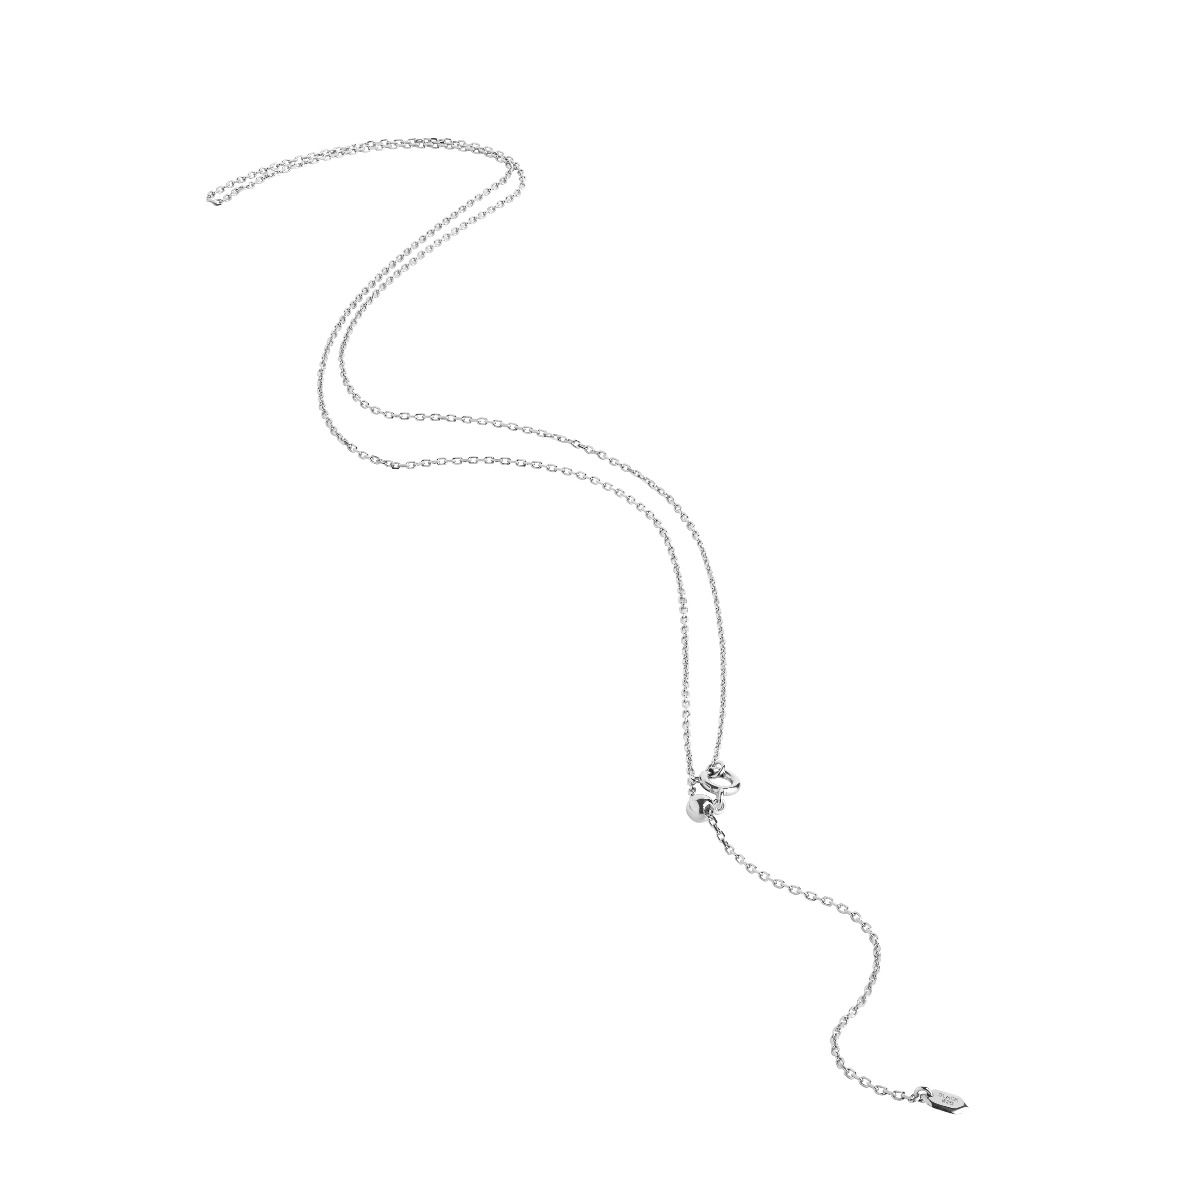 Maria Black Chain 50 Adjustable Necklace Smykke Sølv - [shop.name]